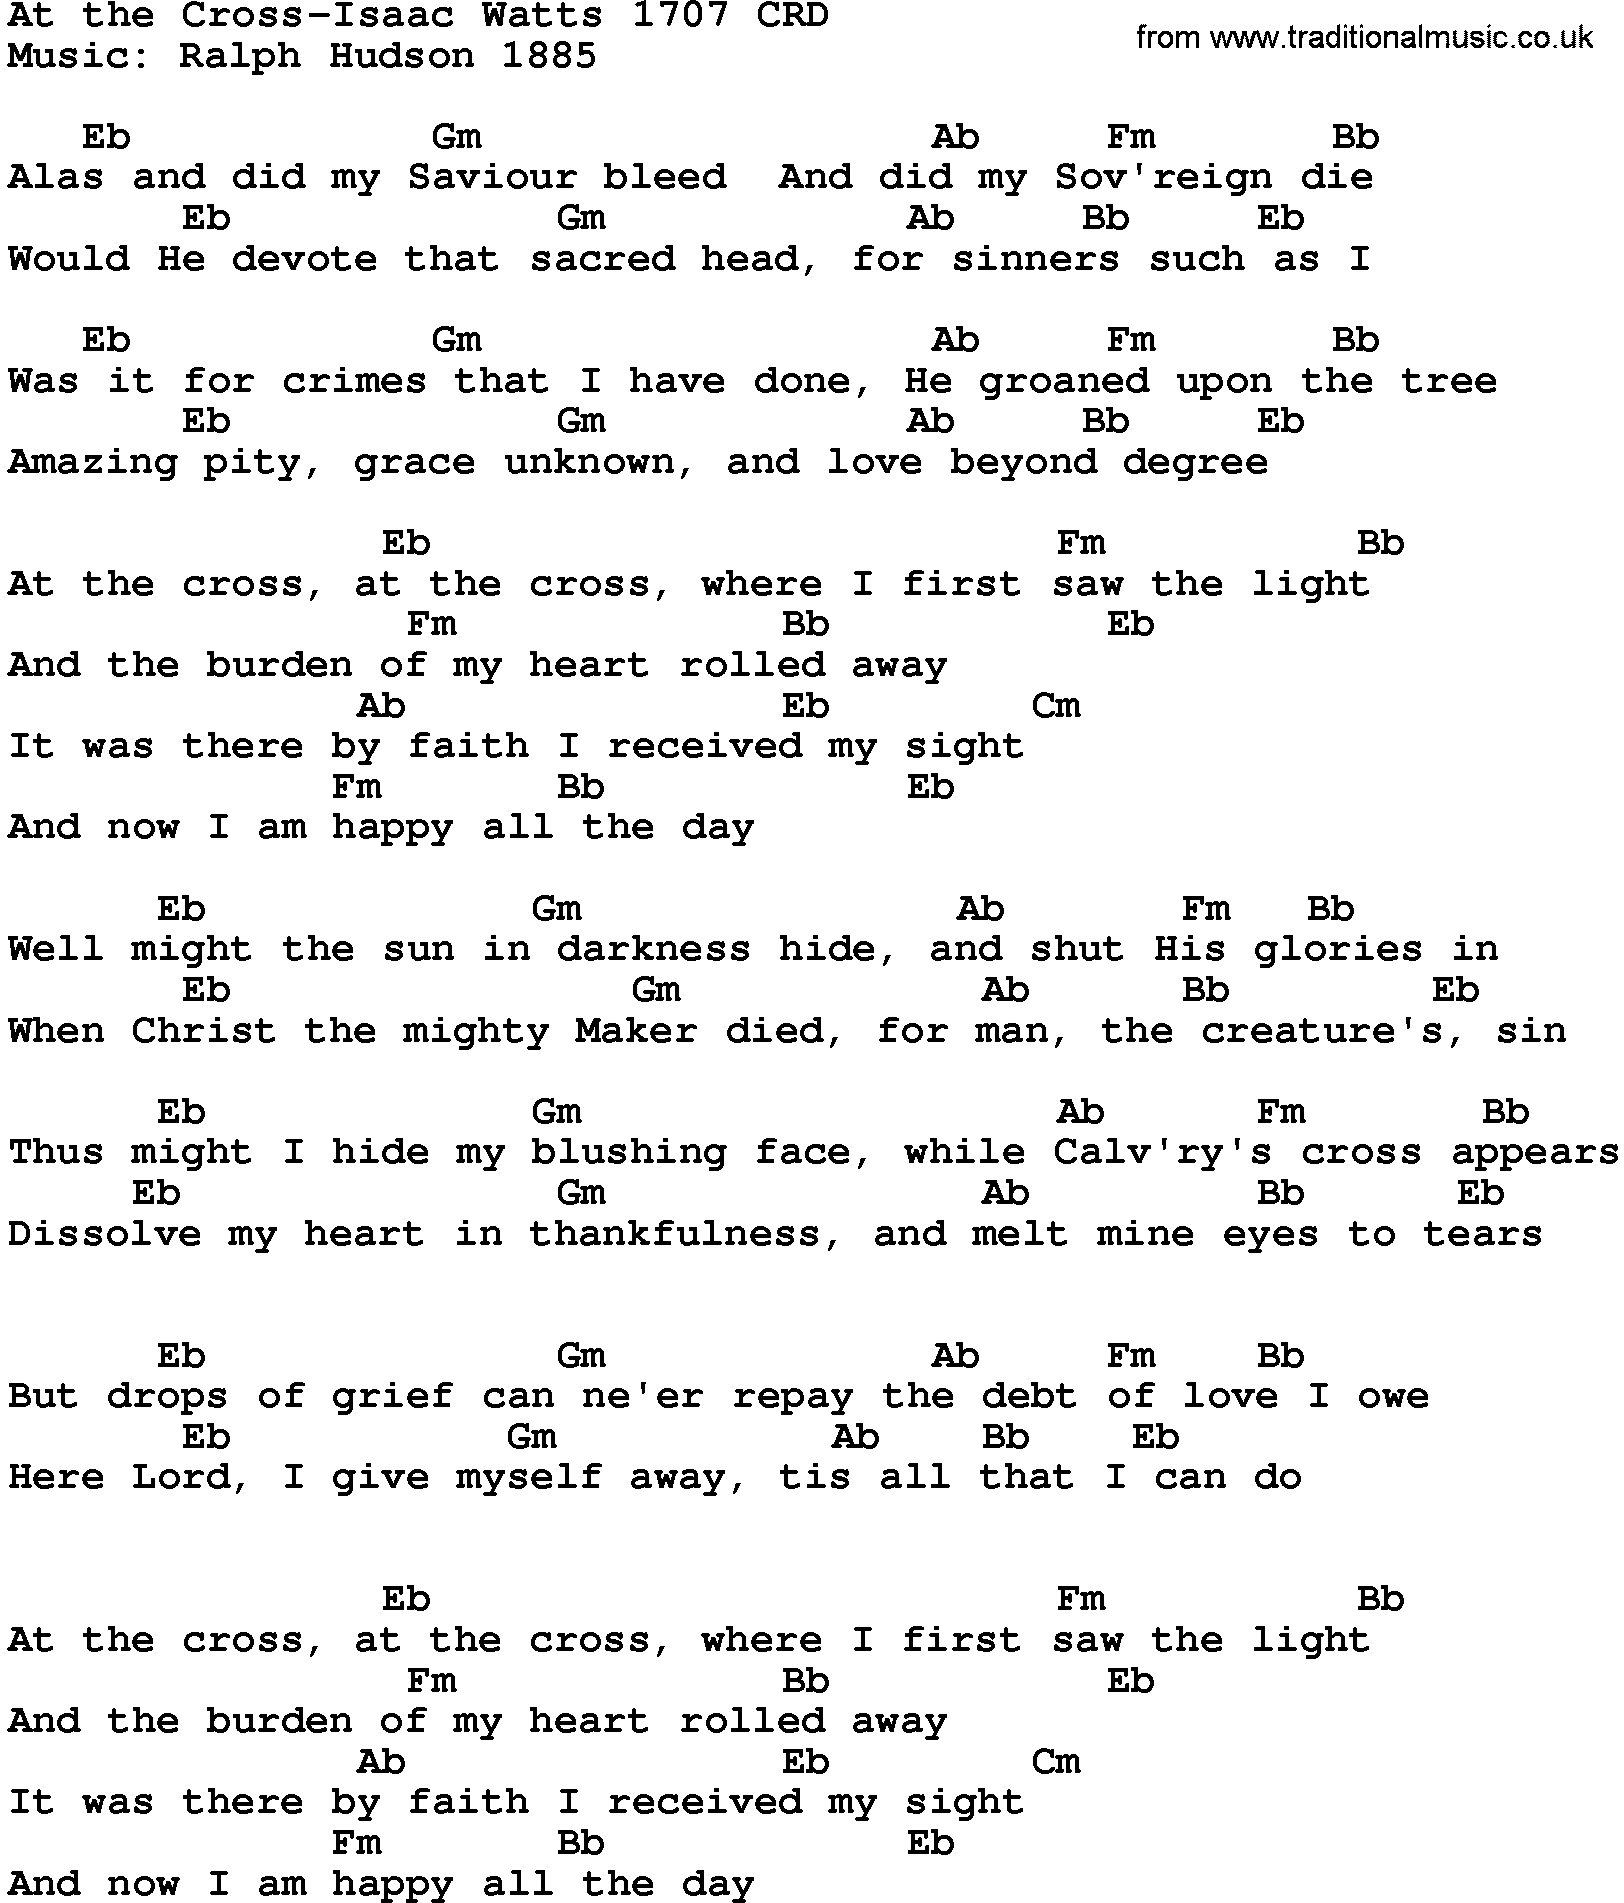 Gospel Song: At The Cross-Isaac Watts 1707, lyrics and chords.